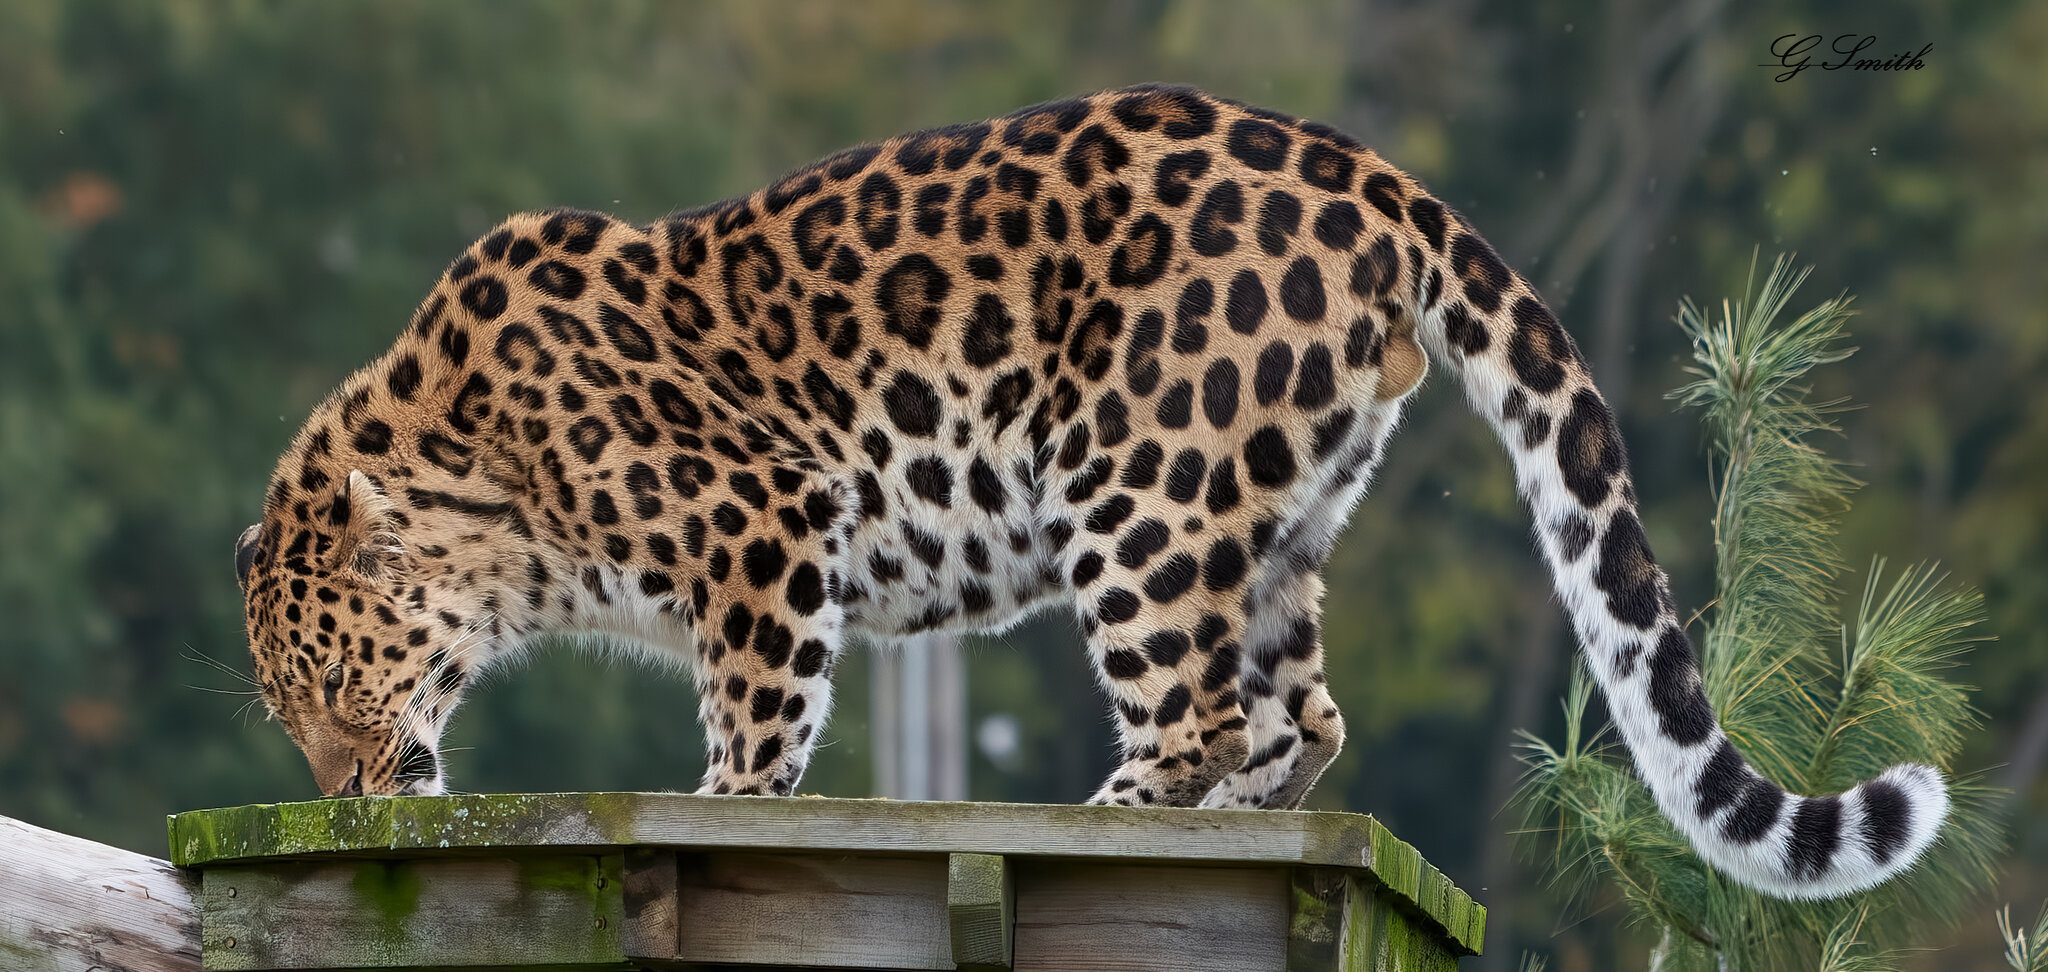 leopard 2020 2.jpg